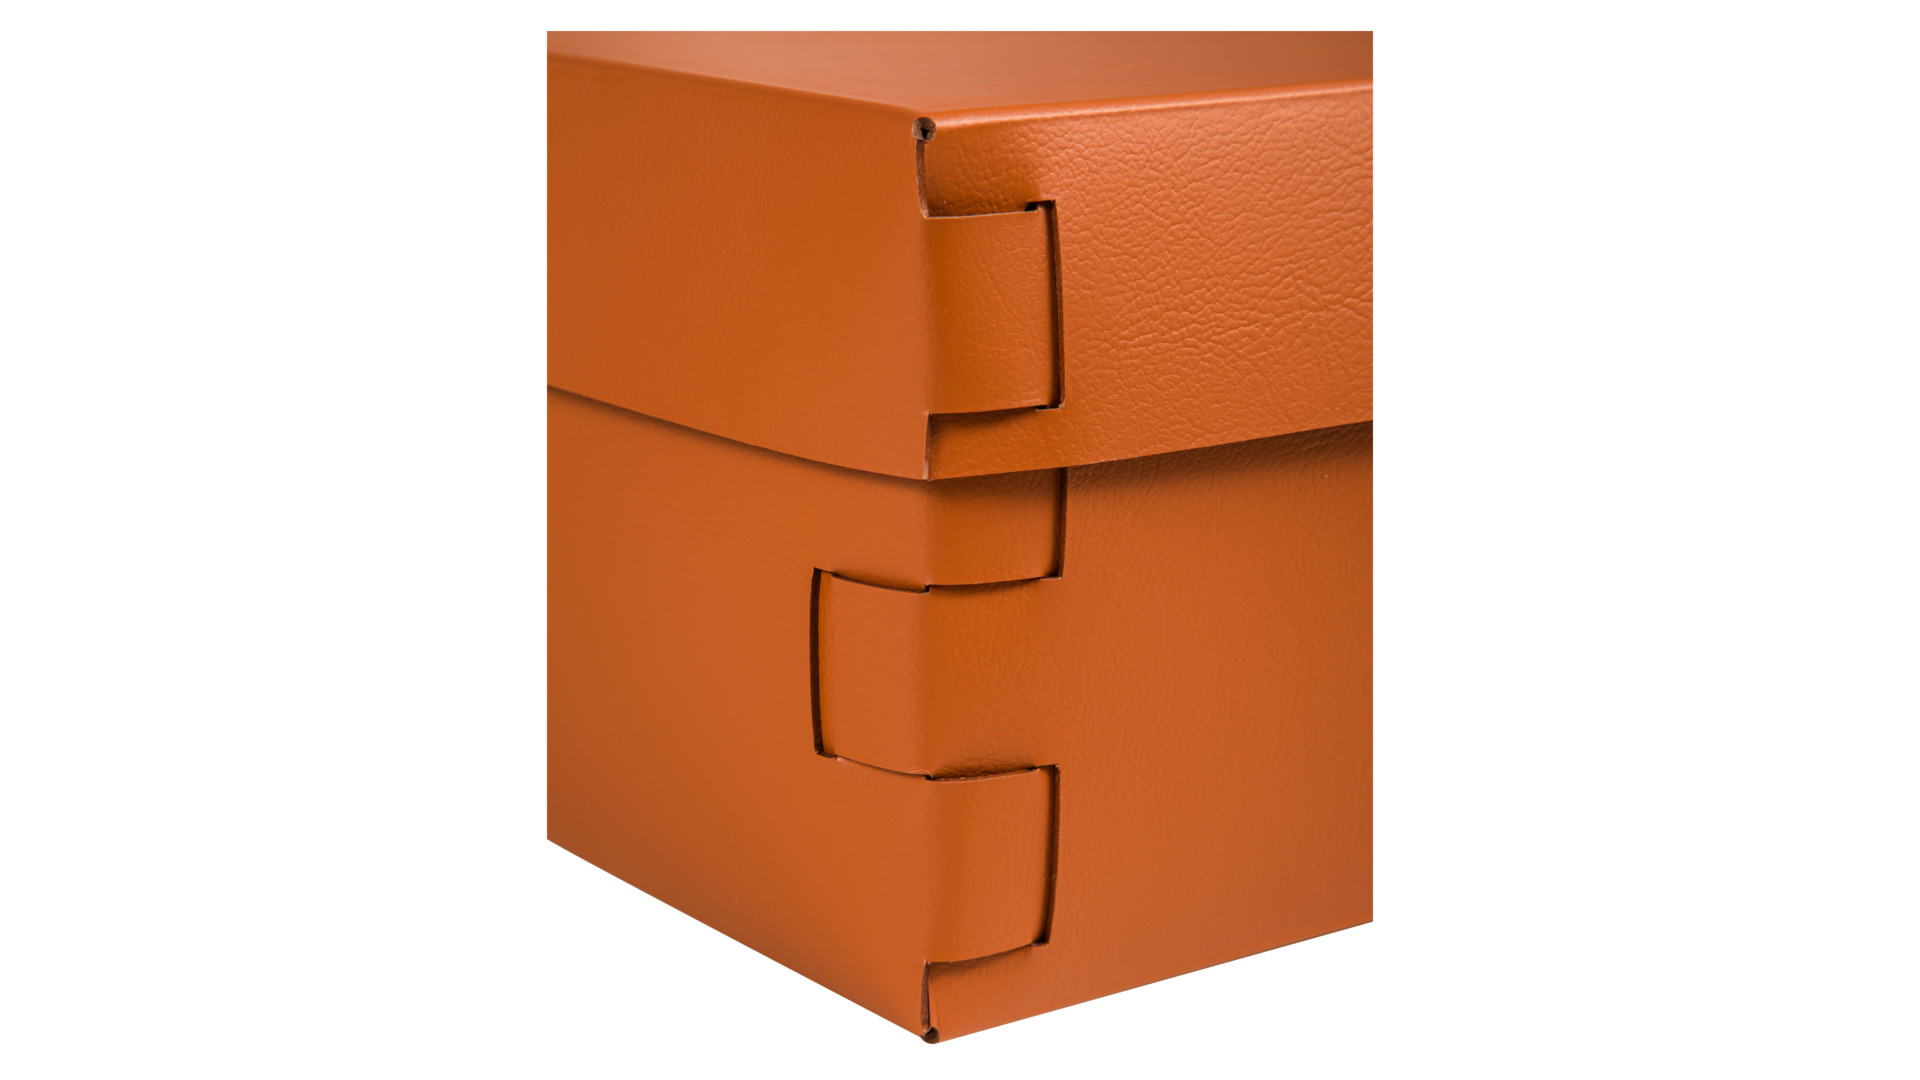 Коробка ADJ Snob  25x15х13,5 см, кожа натуральная, коньяк